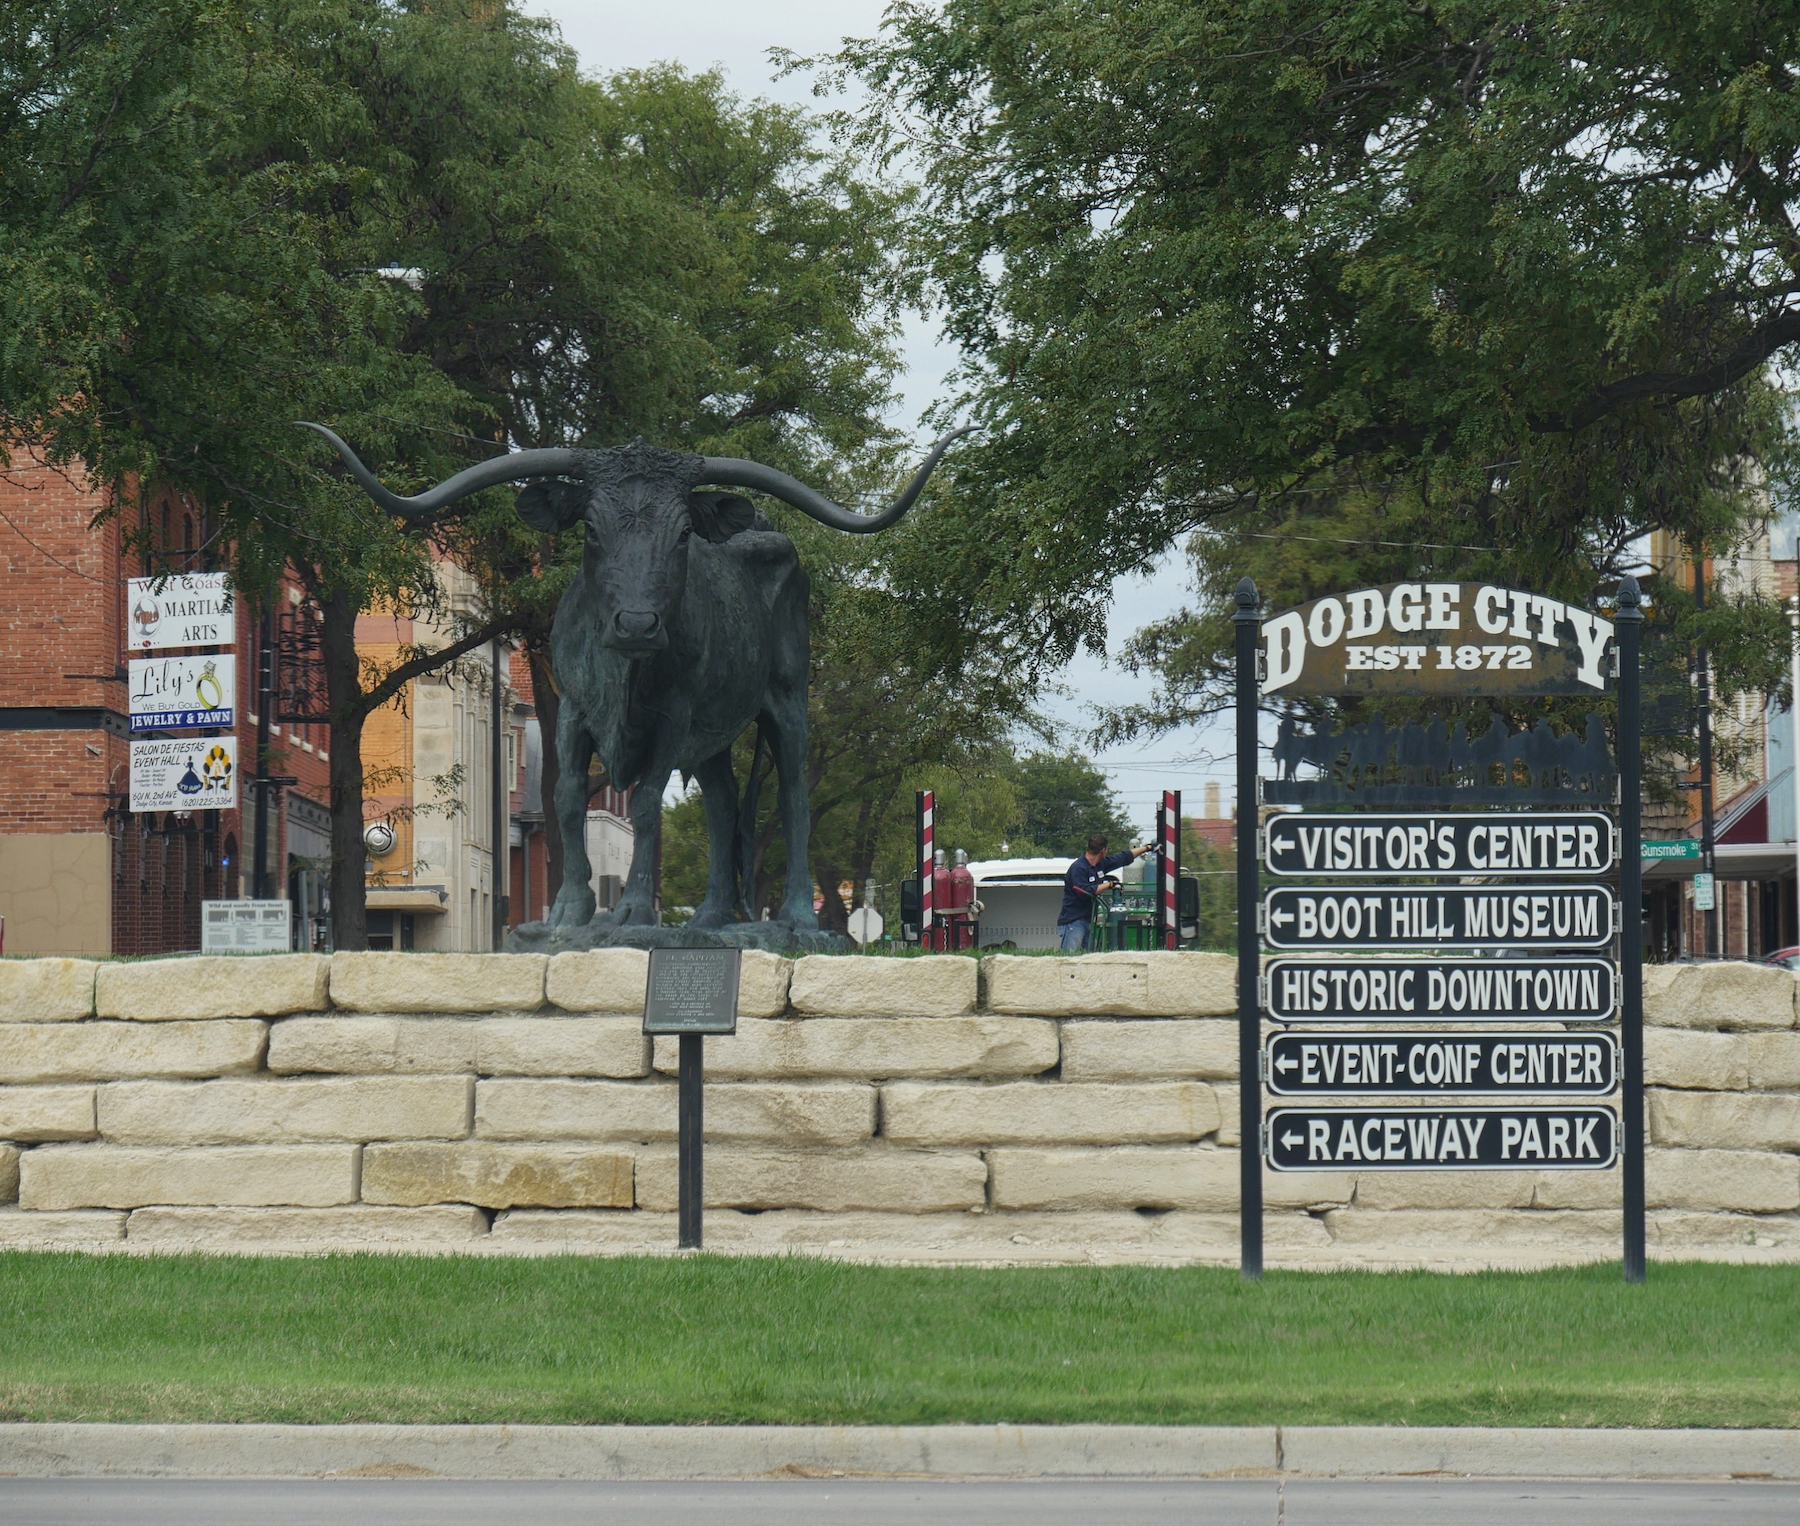 A los fanáticos de Westerns les encantará Dodge City, que celebra con orgullo su conexión con el Salvaje Oeste, desde sus rebaños de Longhorns hasta sus tiroteos en la antigua calle principal. - 7